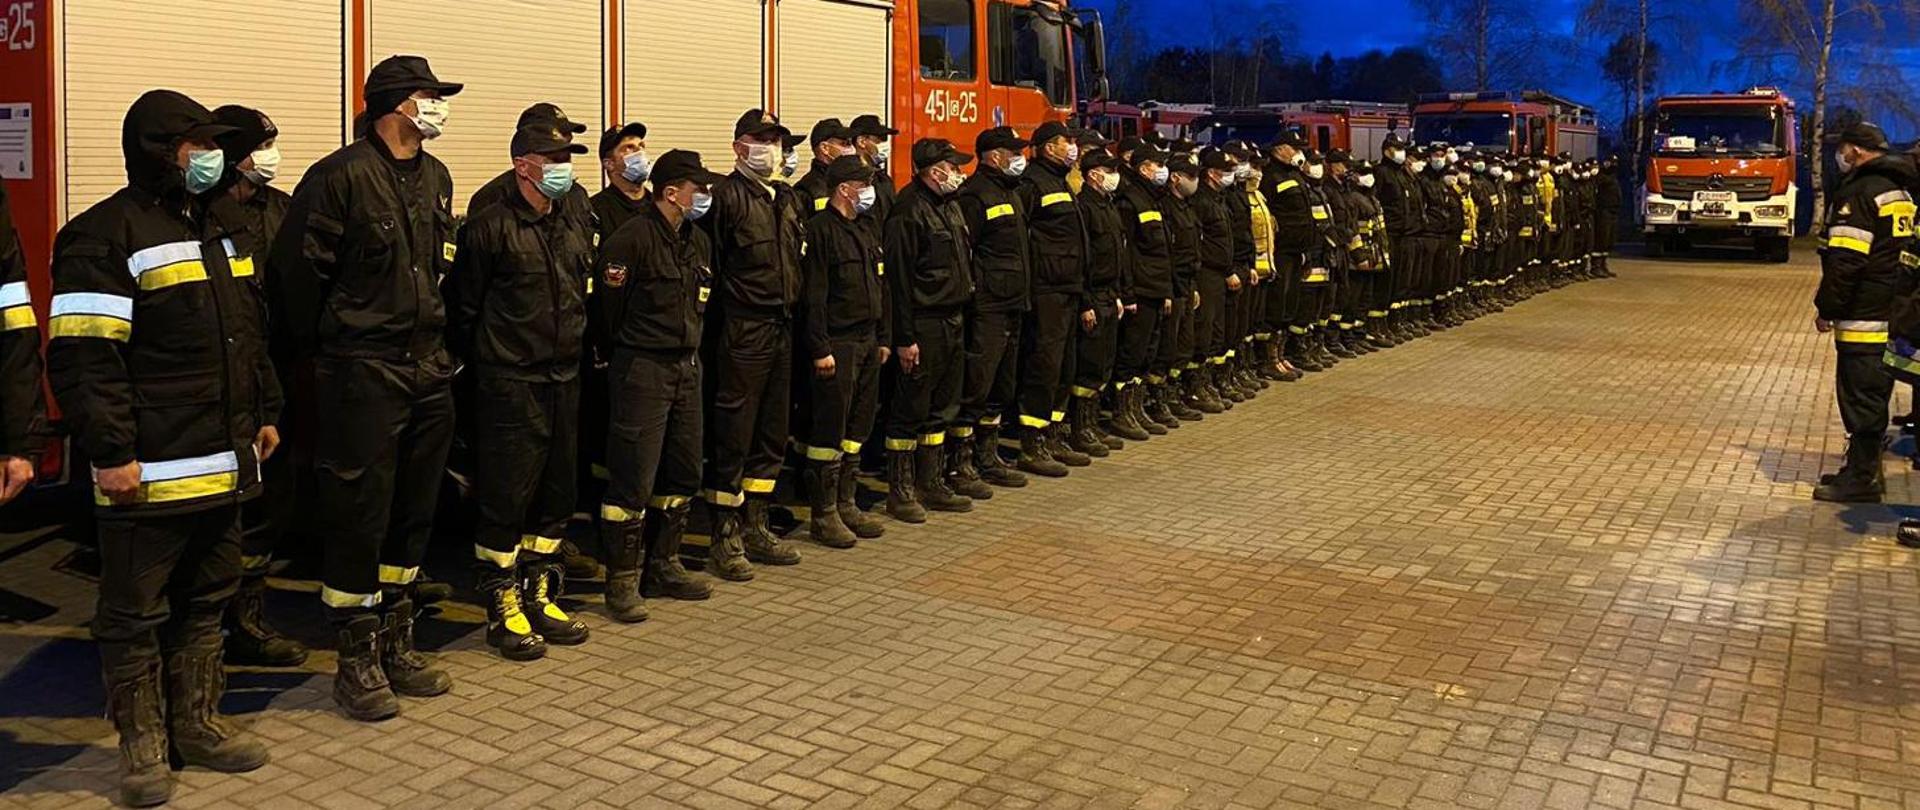 Na zdjęciu strażacy stojący w dwuszeregu podczas omówienia zadania przez prowadzącego ćwiczenia